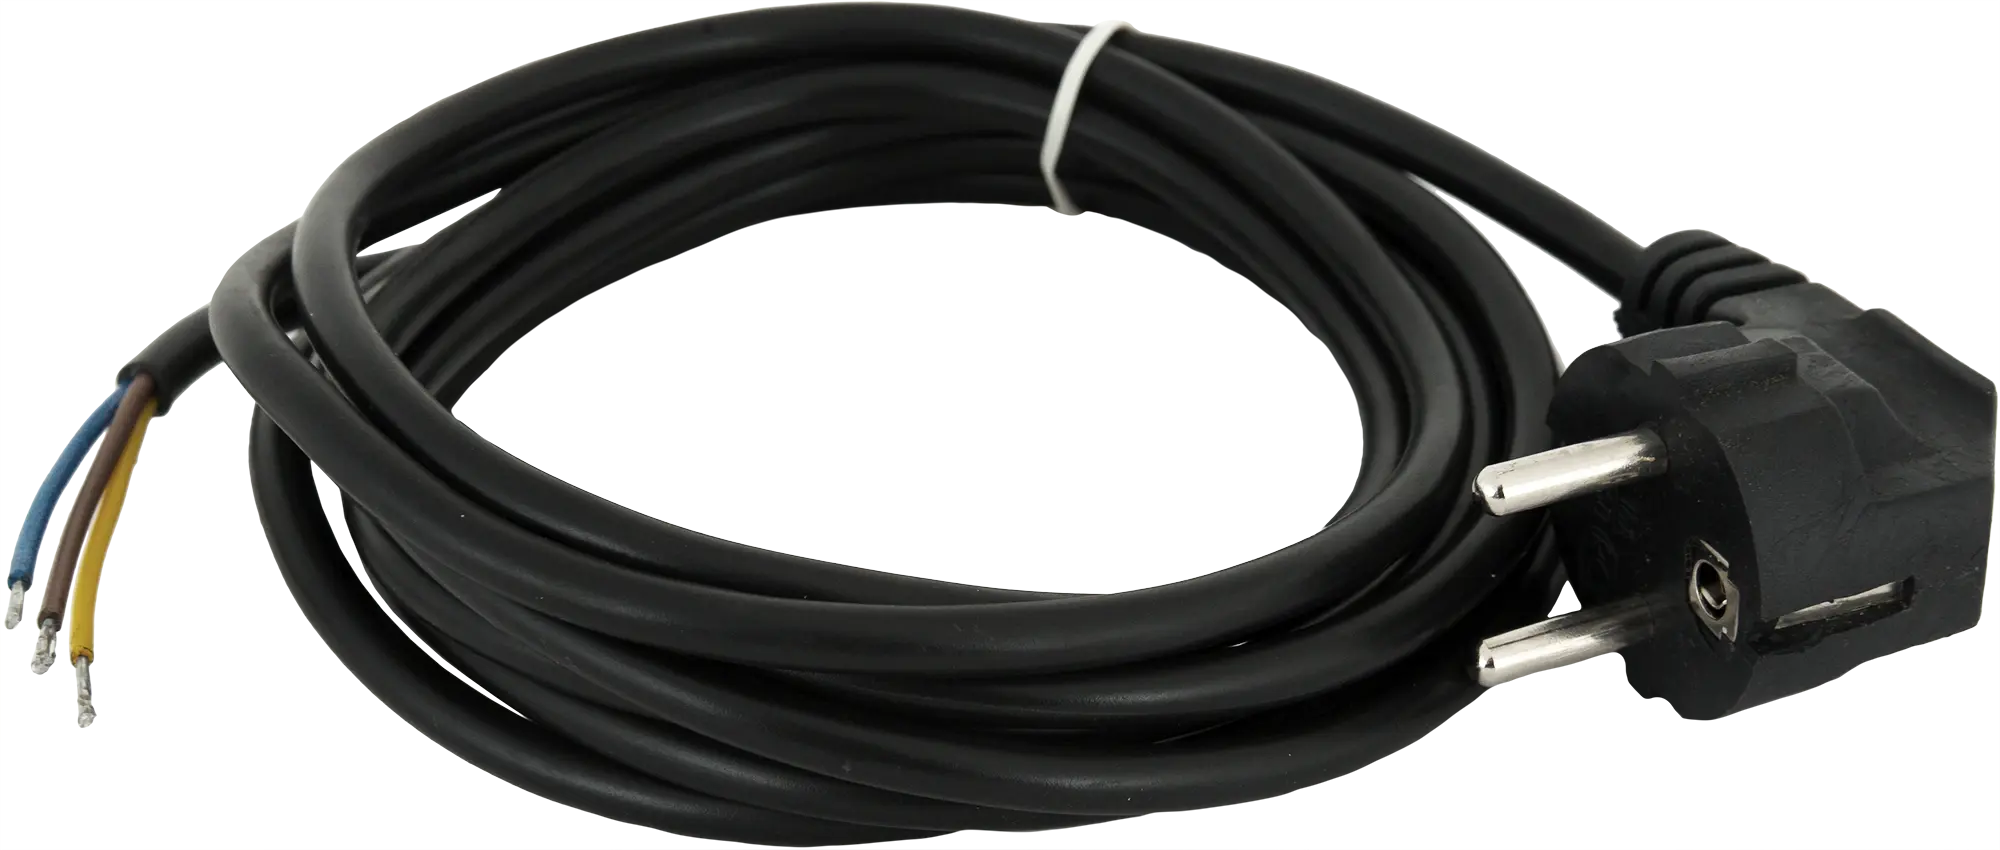 Шнур сетевой с заземлением 10 A 1.5 м цвет чёрный шнур сетевой с заземлением 16 a 3 м цвет чёрный